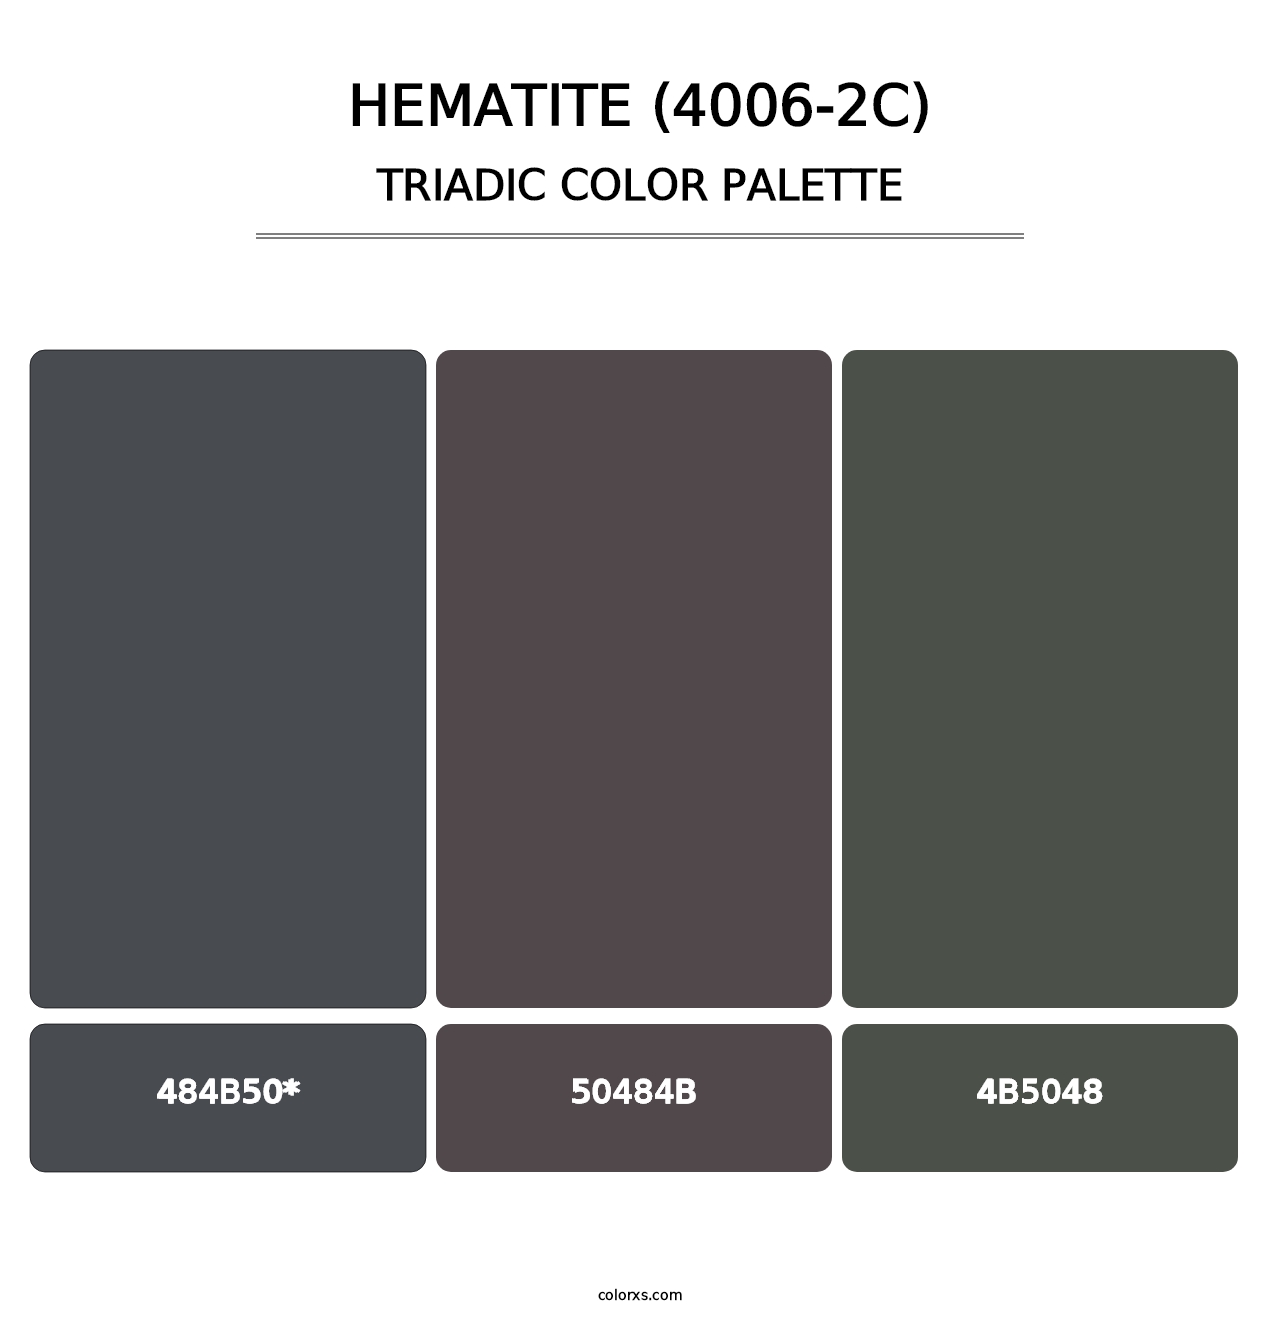 Hematite (4006-2C) - Triadic Color Palette